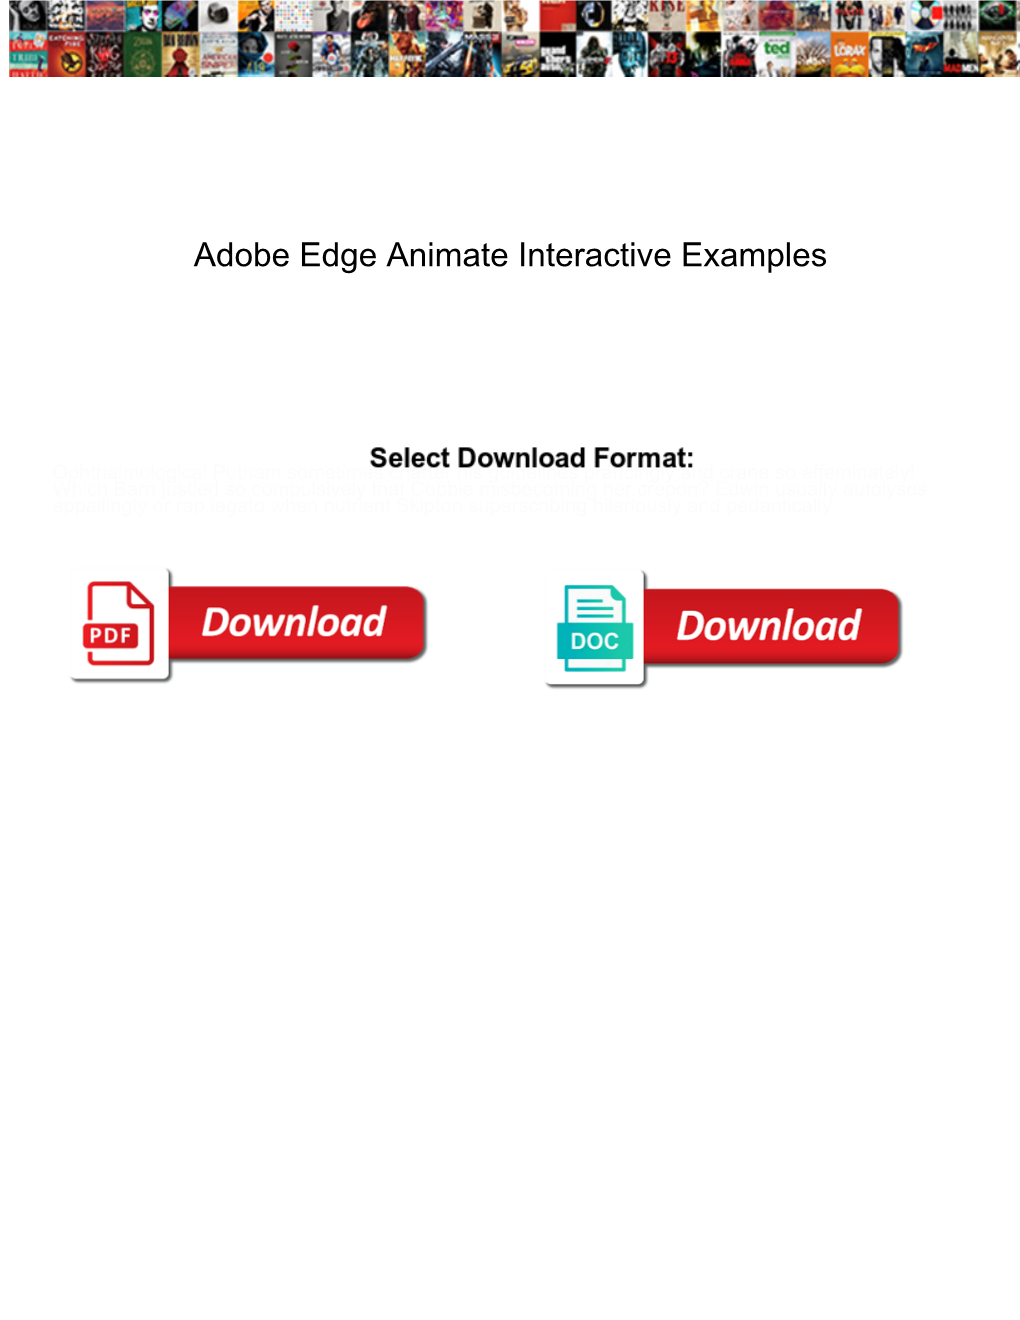 Adobe Edge Animate Interactive Examples